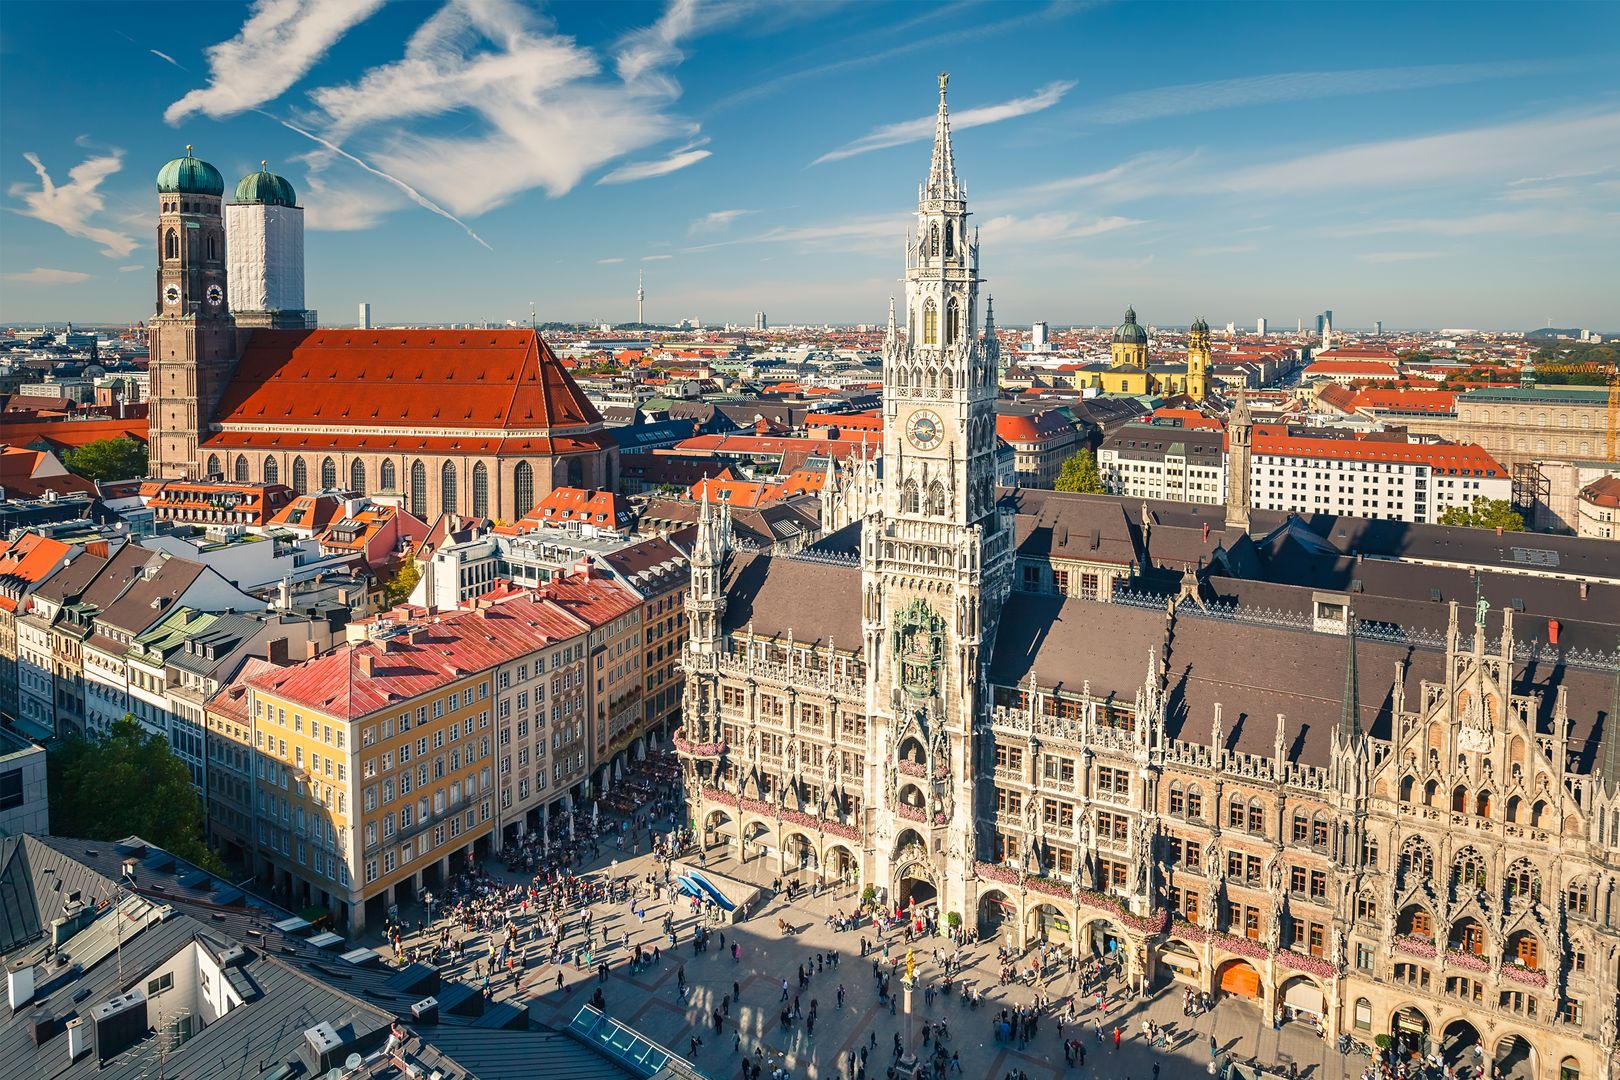 Ausblick auf den Marienplatz in der Münchner Altstadt aus der Vogelperspektive